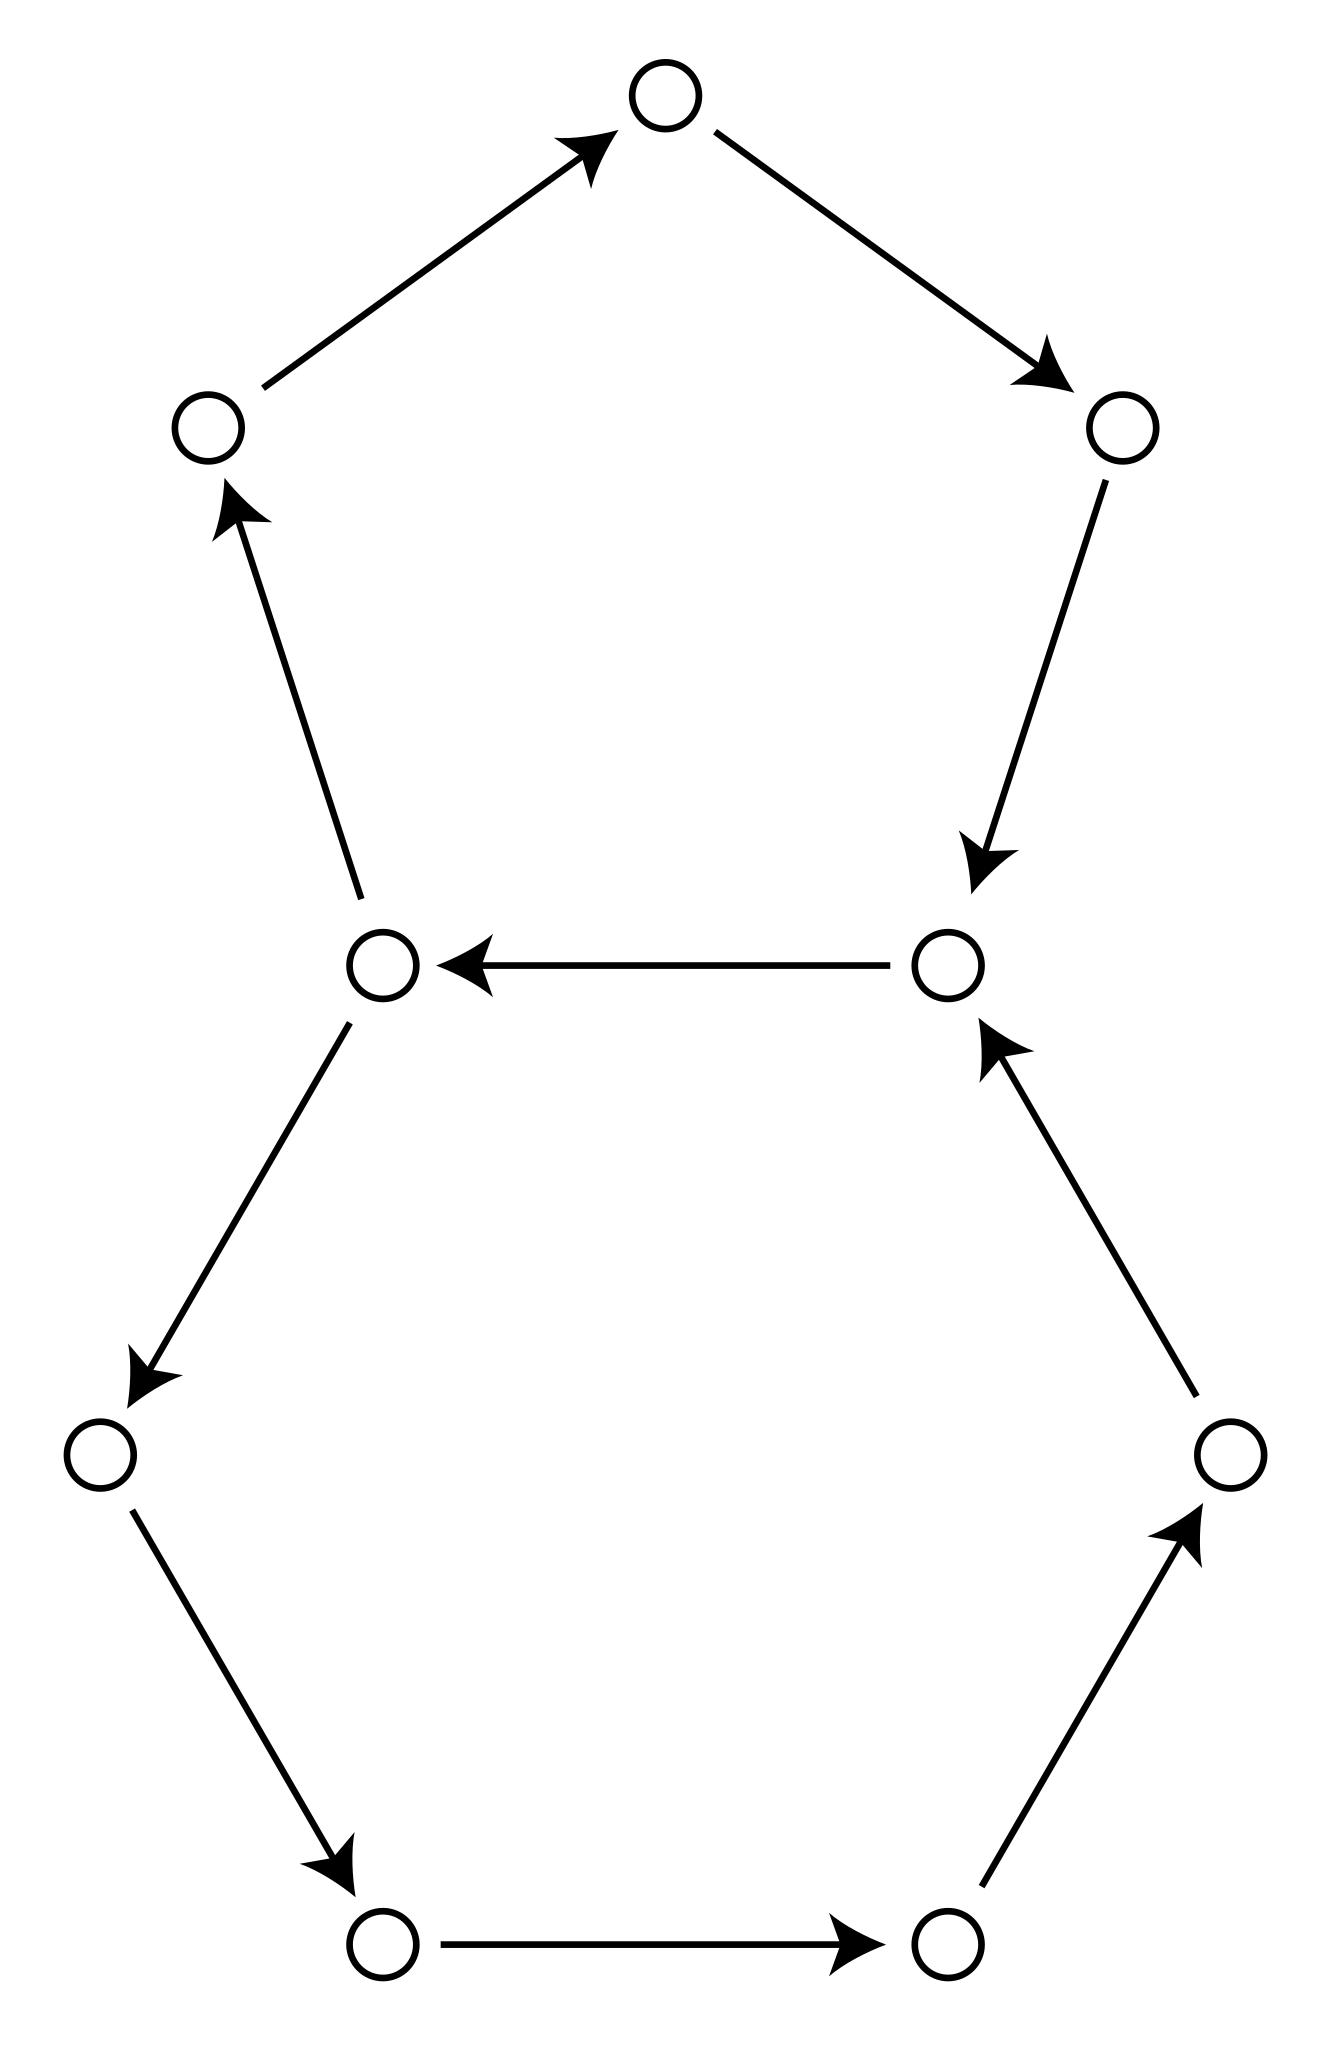 Циклы графов